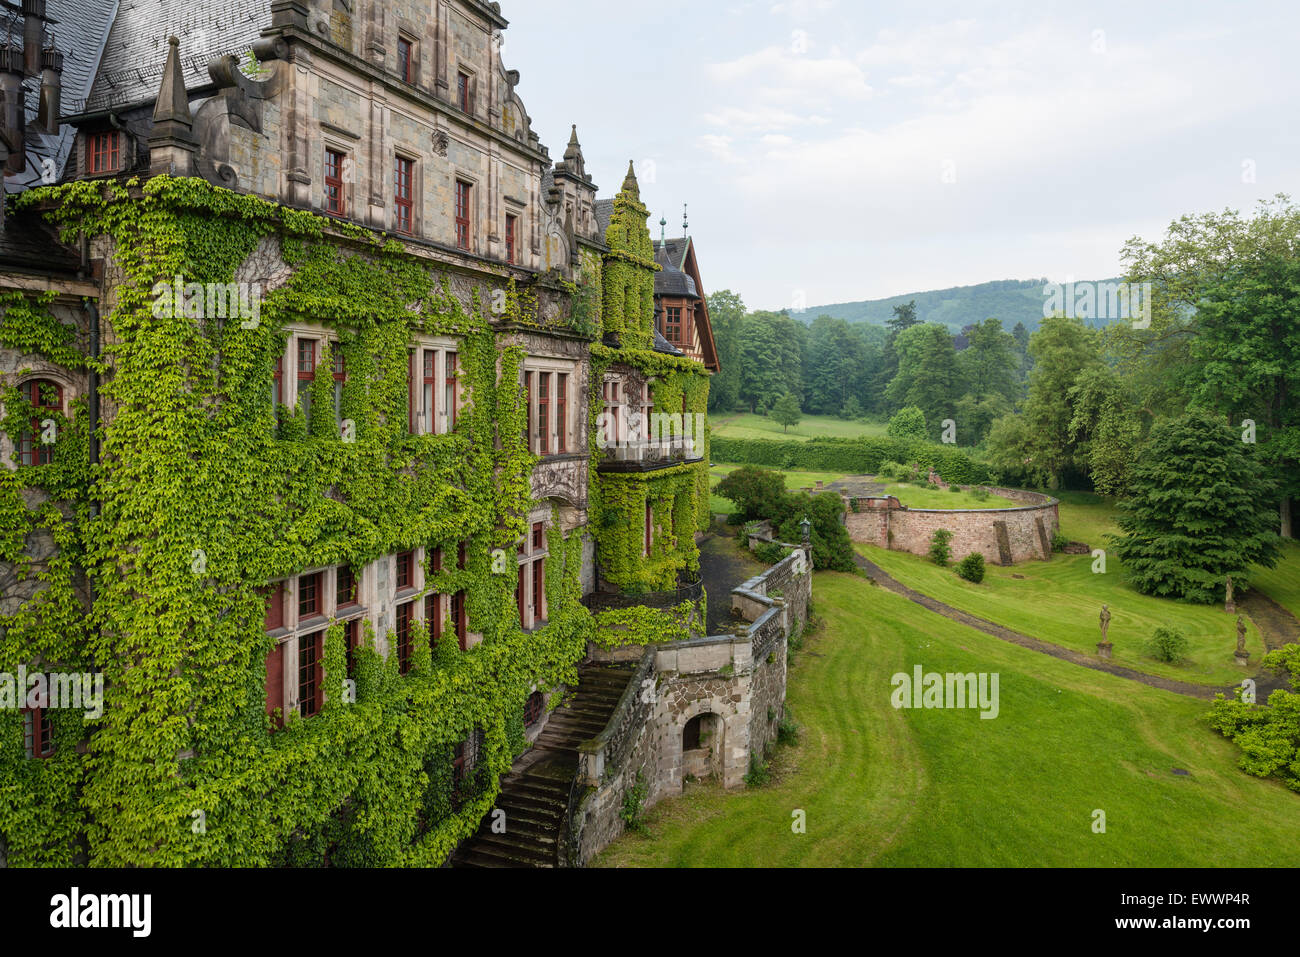 Exterior facade of the imposing Schloss Ramholz Stock Photo